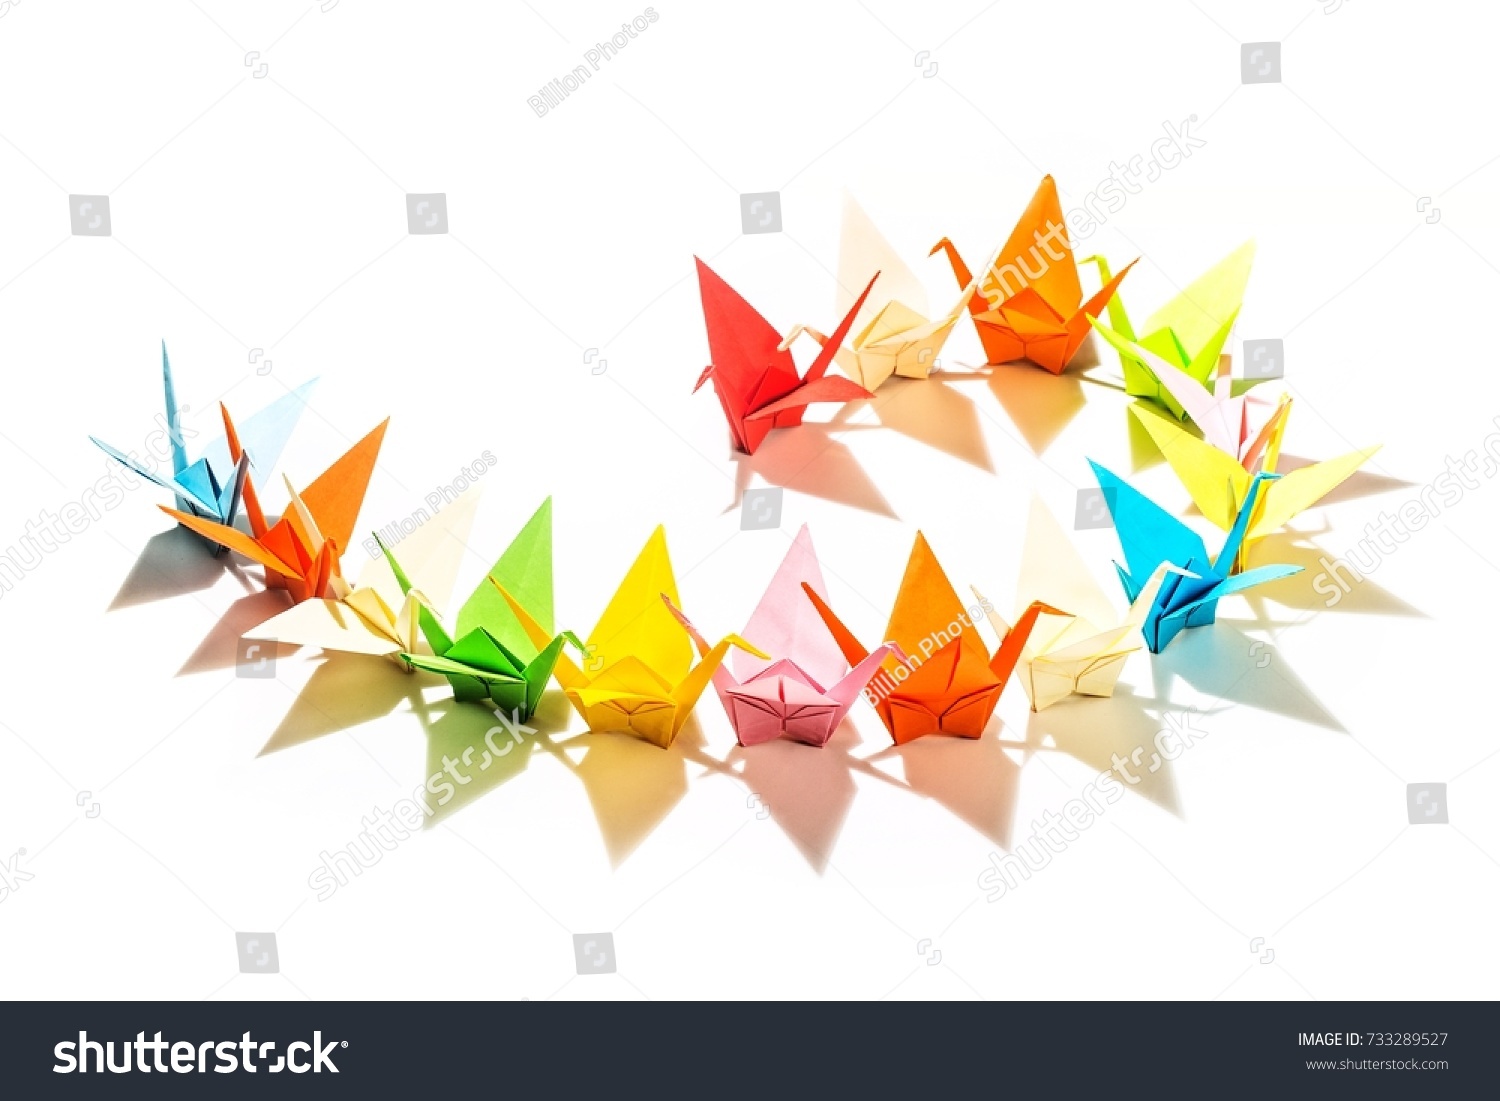 Origami. #733289527